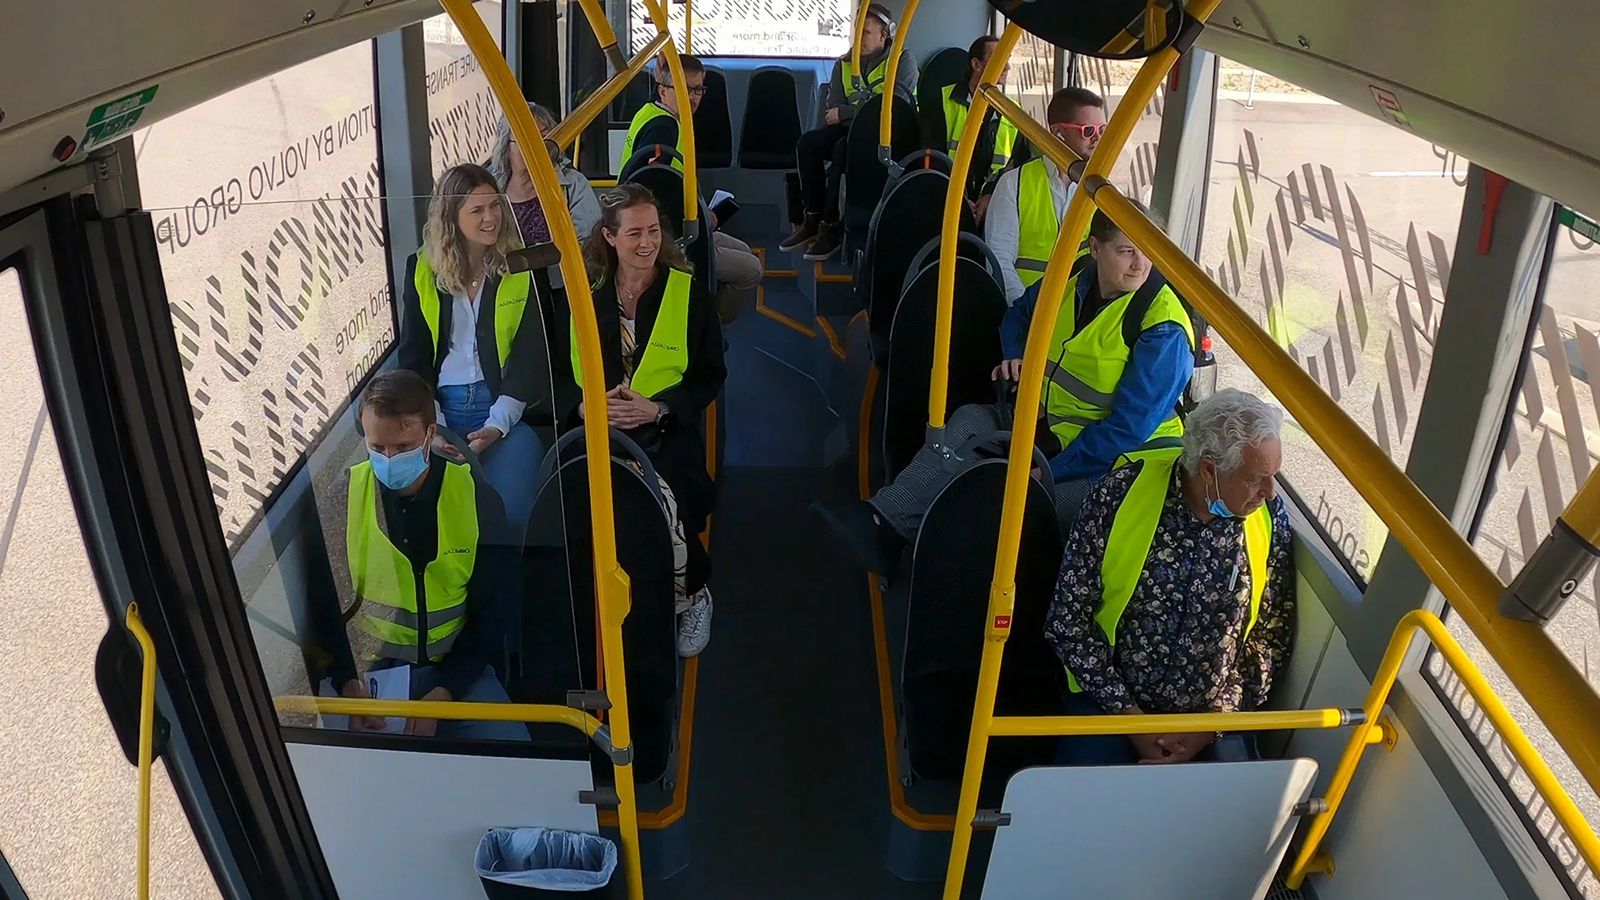 Κατά τη διάρκεια της δοκιμαστικής διαδρομής, οι 22 επιβάτες γνώρισαν πώς είναι να ταξιδεύεις με ένα εντελώς αυτόνομο λεωφορείο χωρίς οδηγό πίσω από το τιμόνι.